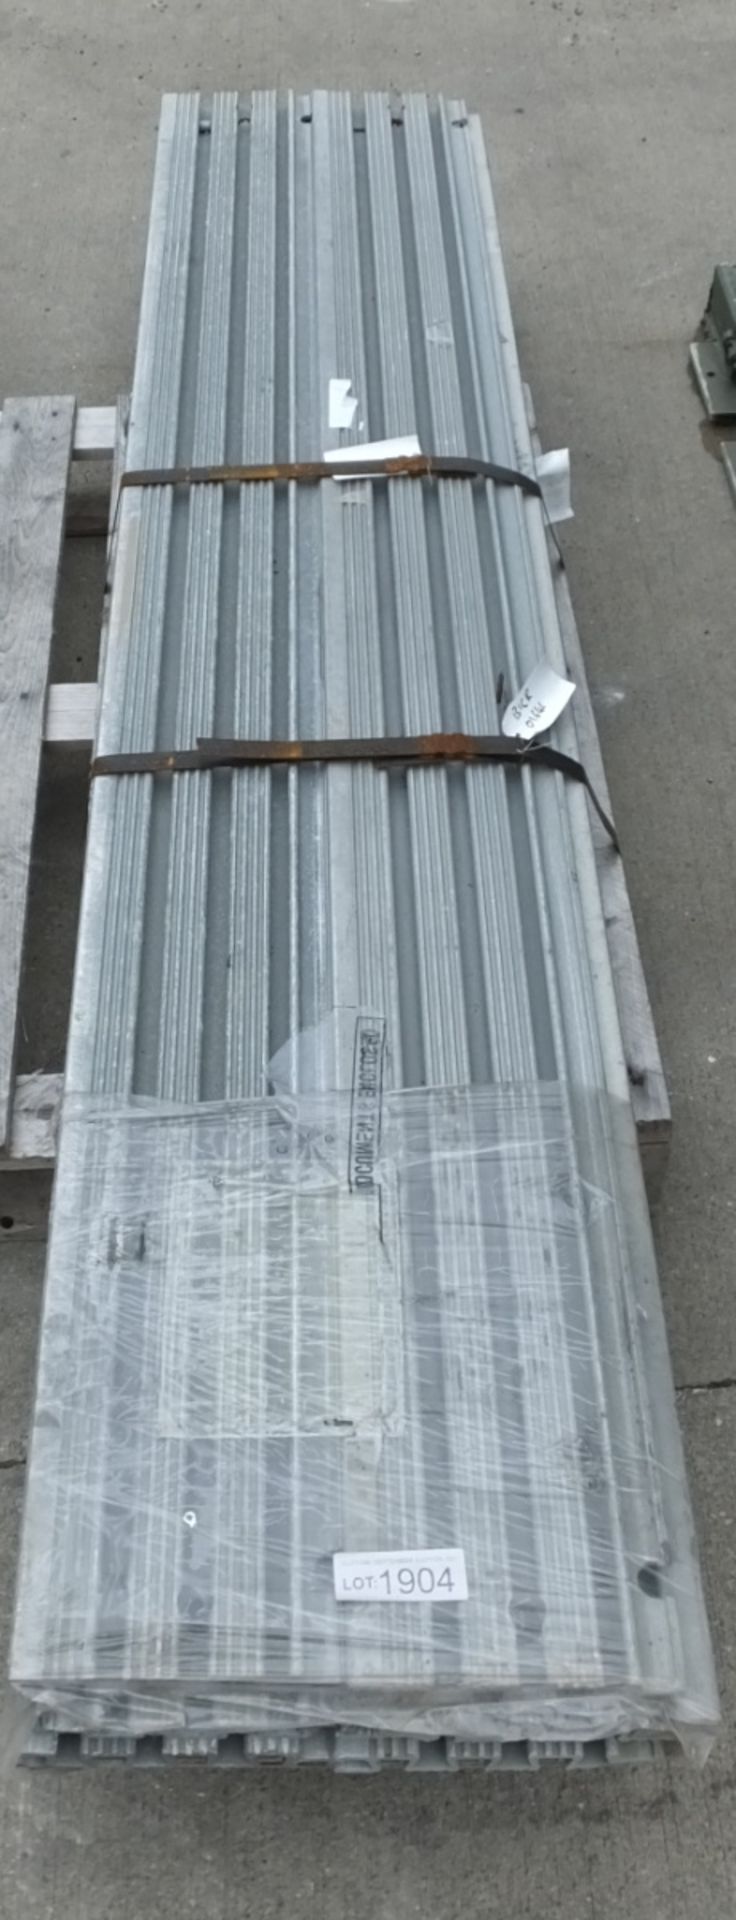 10x Aluminium Trackway Panels